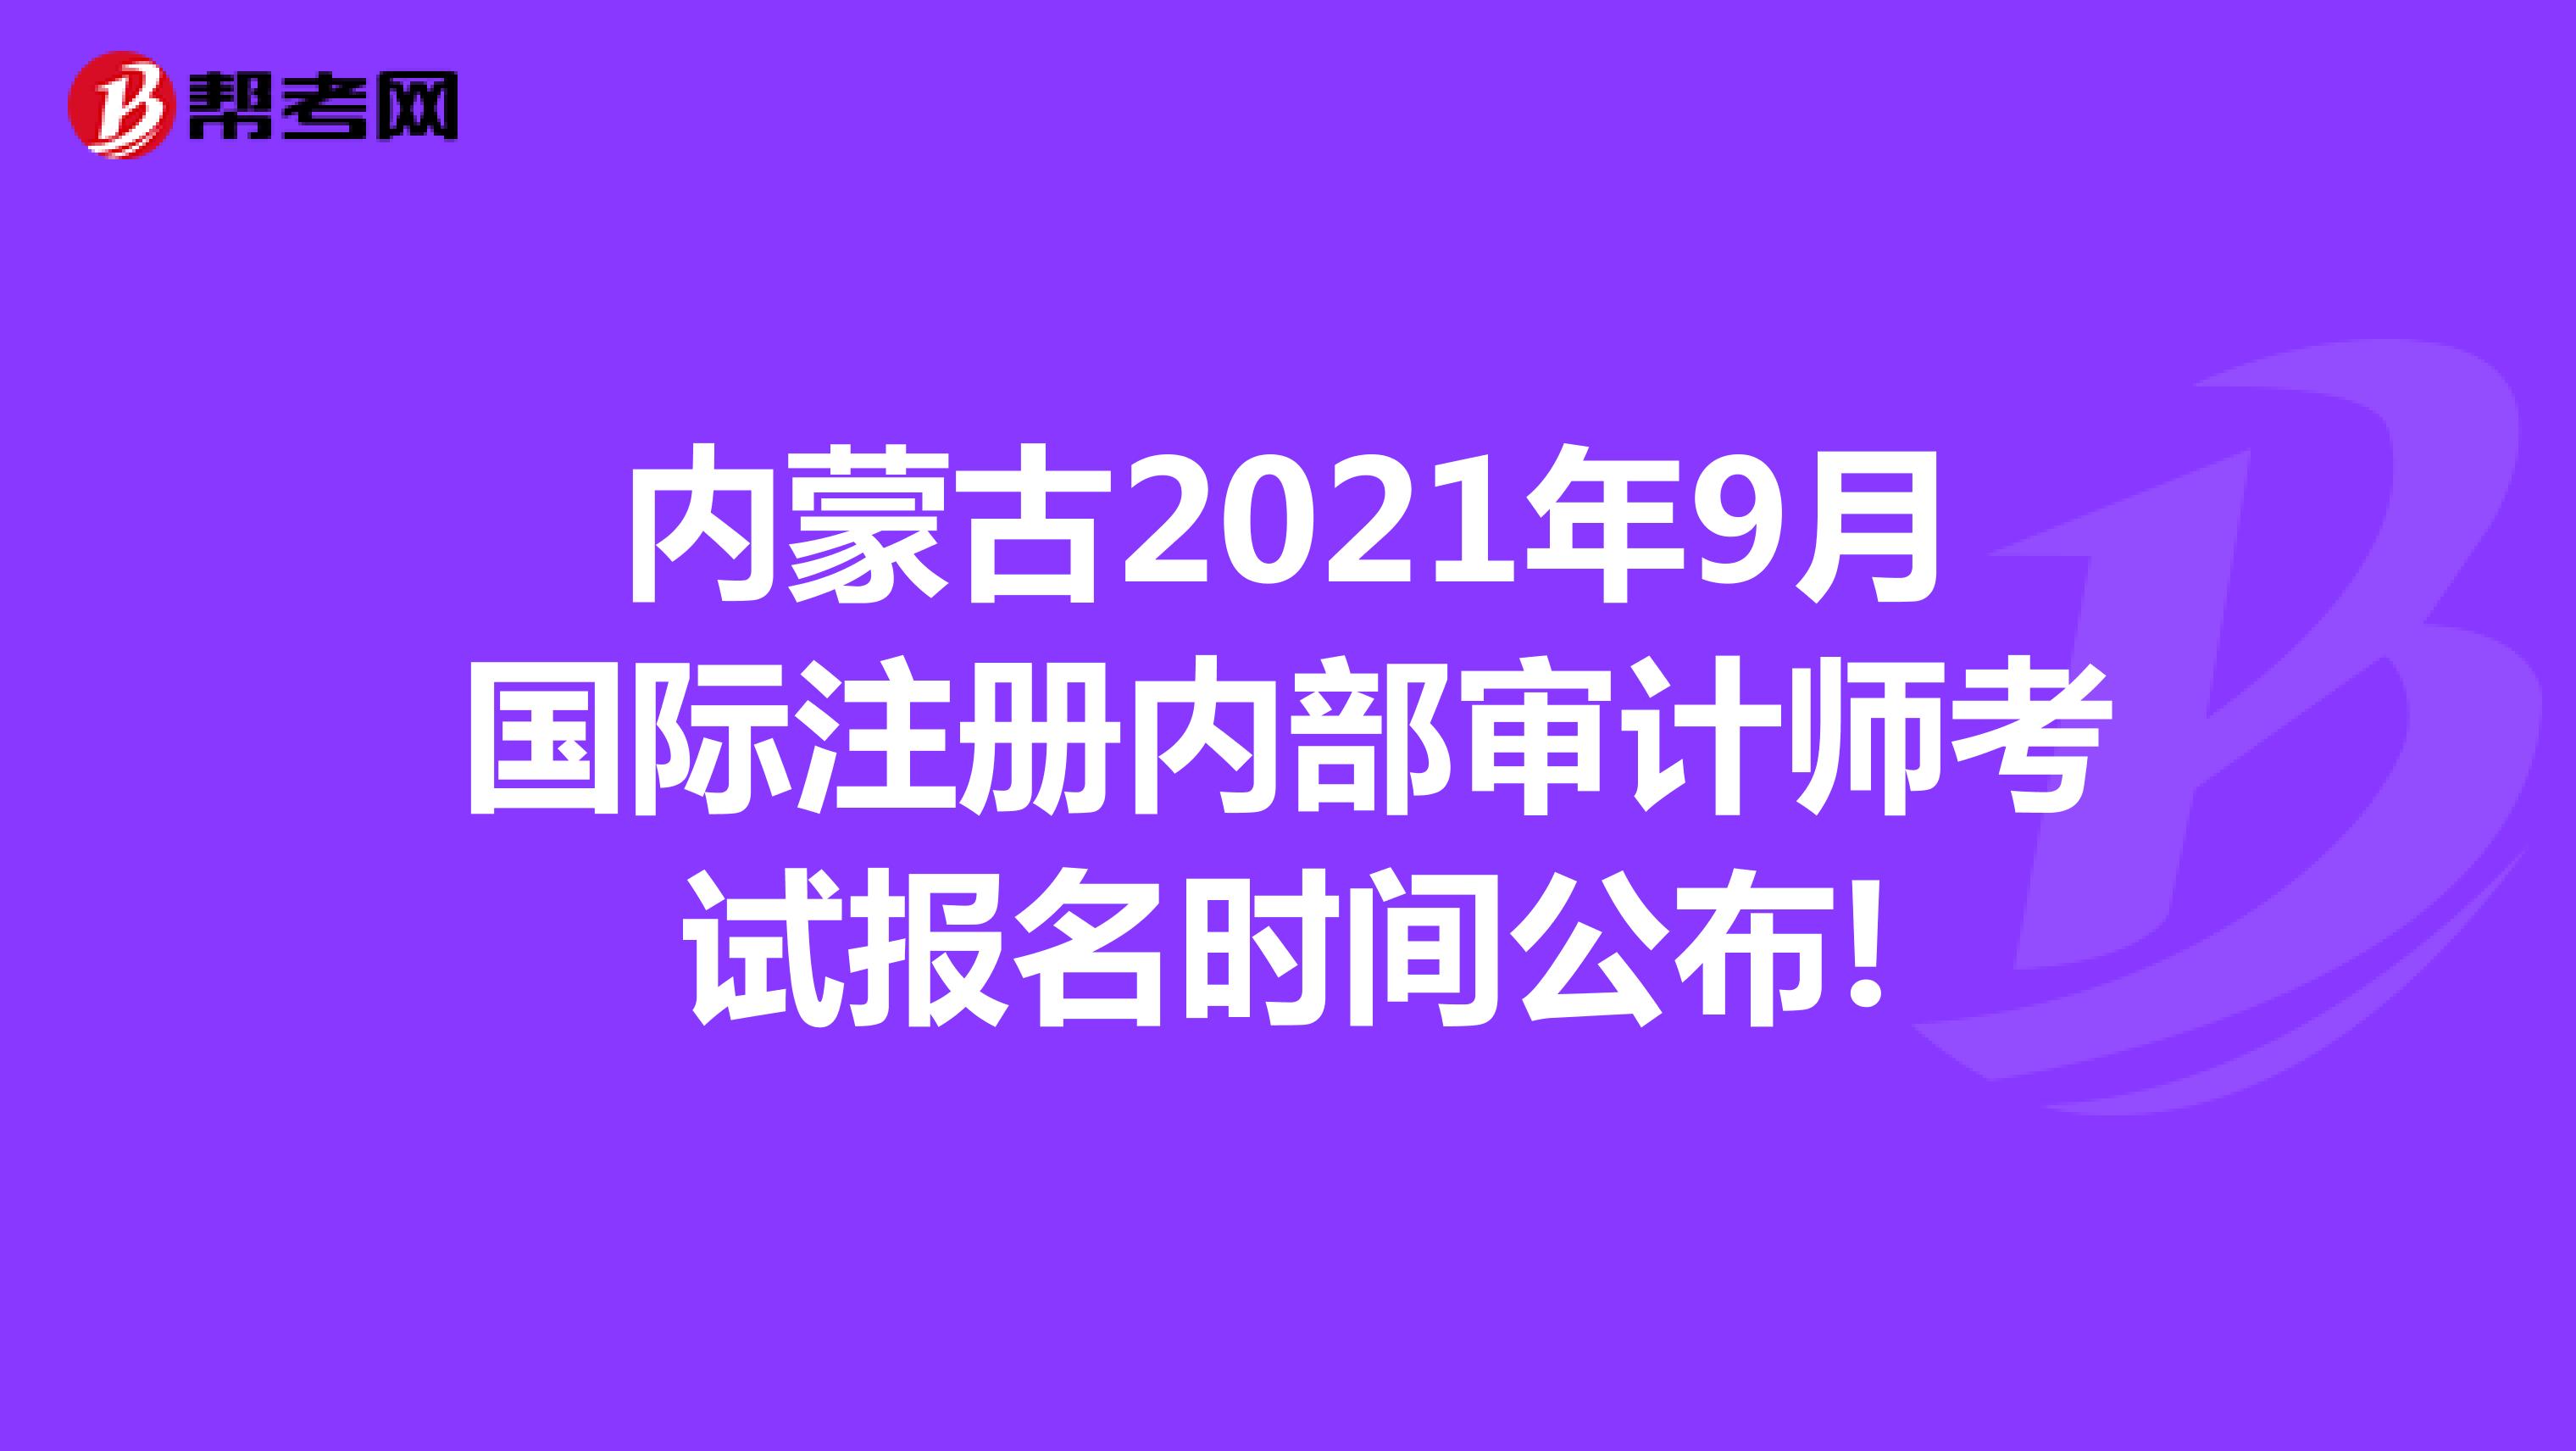 内蒙古2021年9月国际注册内部审计师考试报名时间公布!